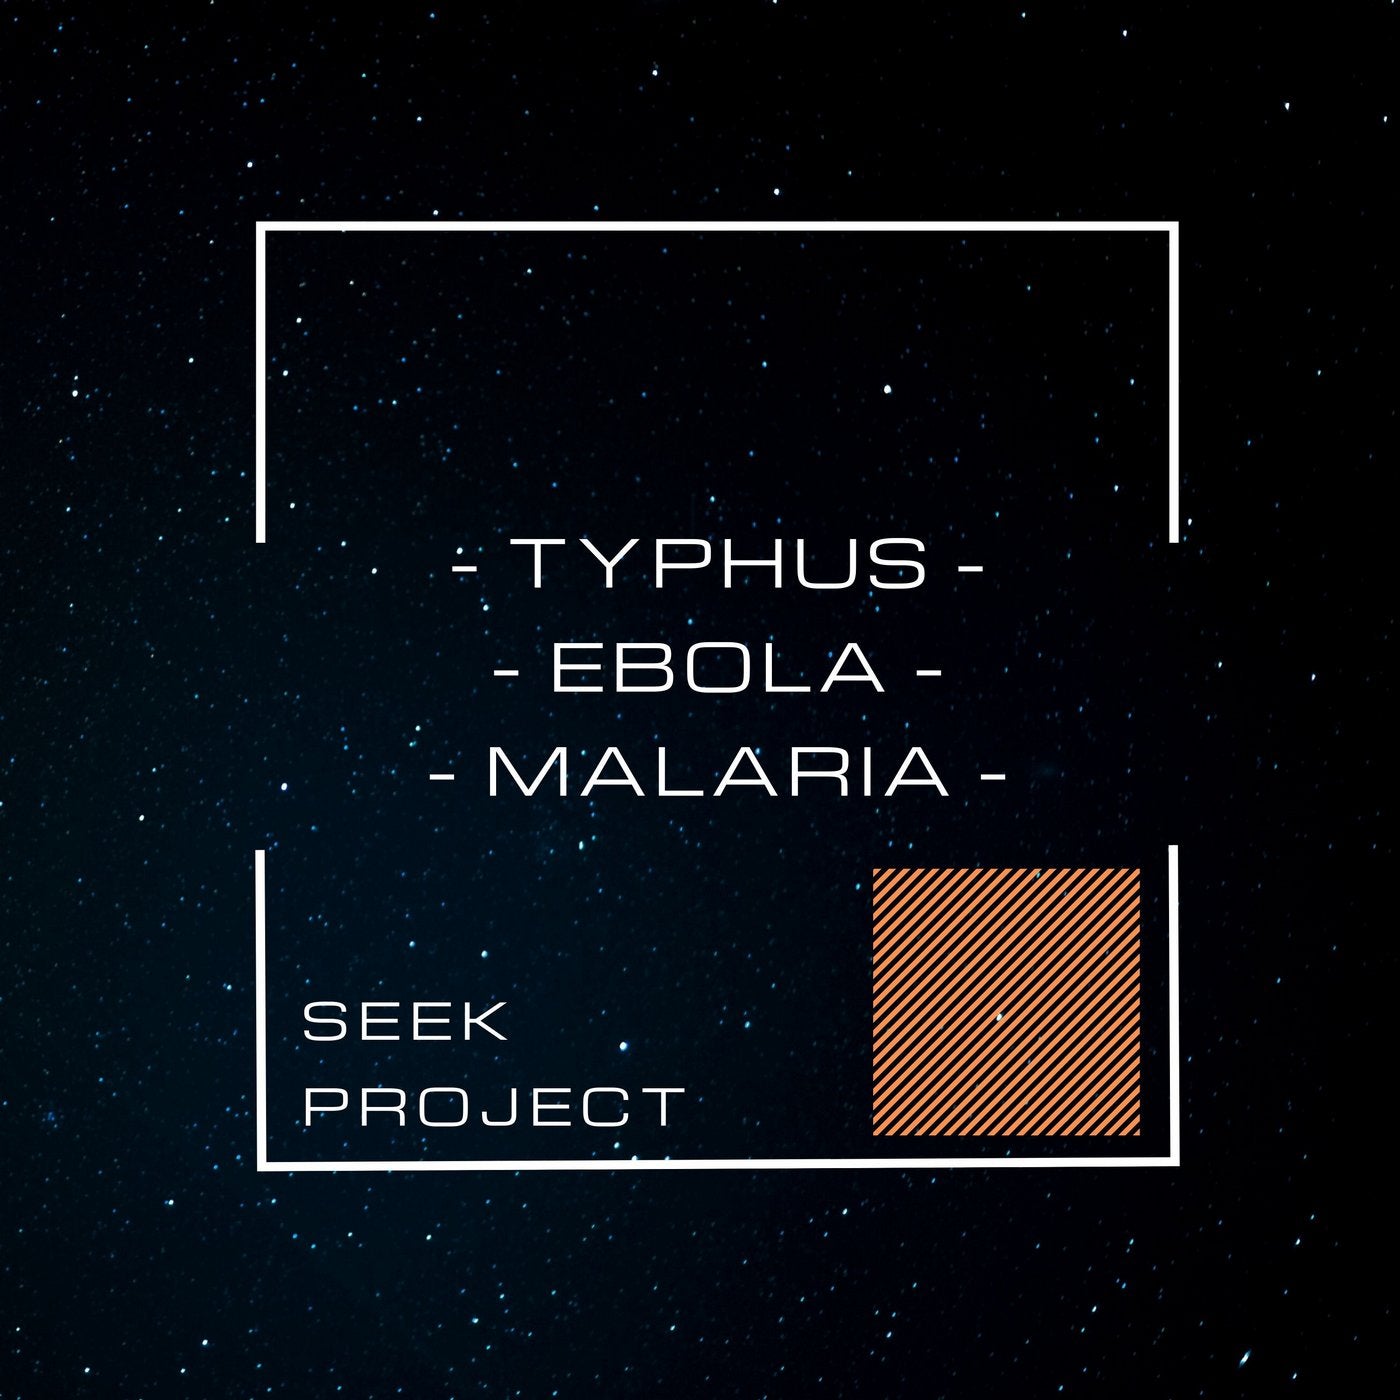 Typhus / Ebola / Malaria